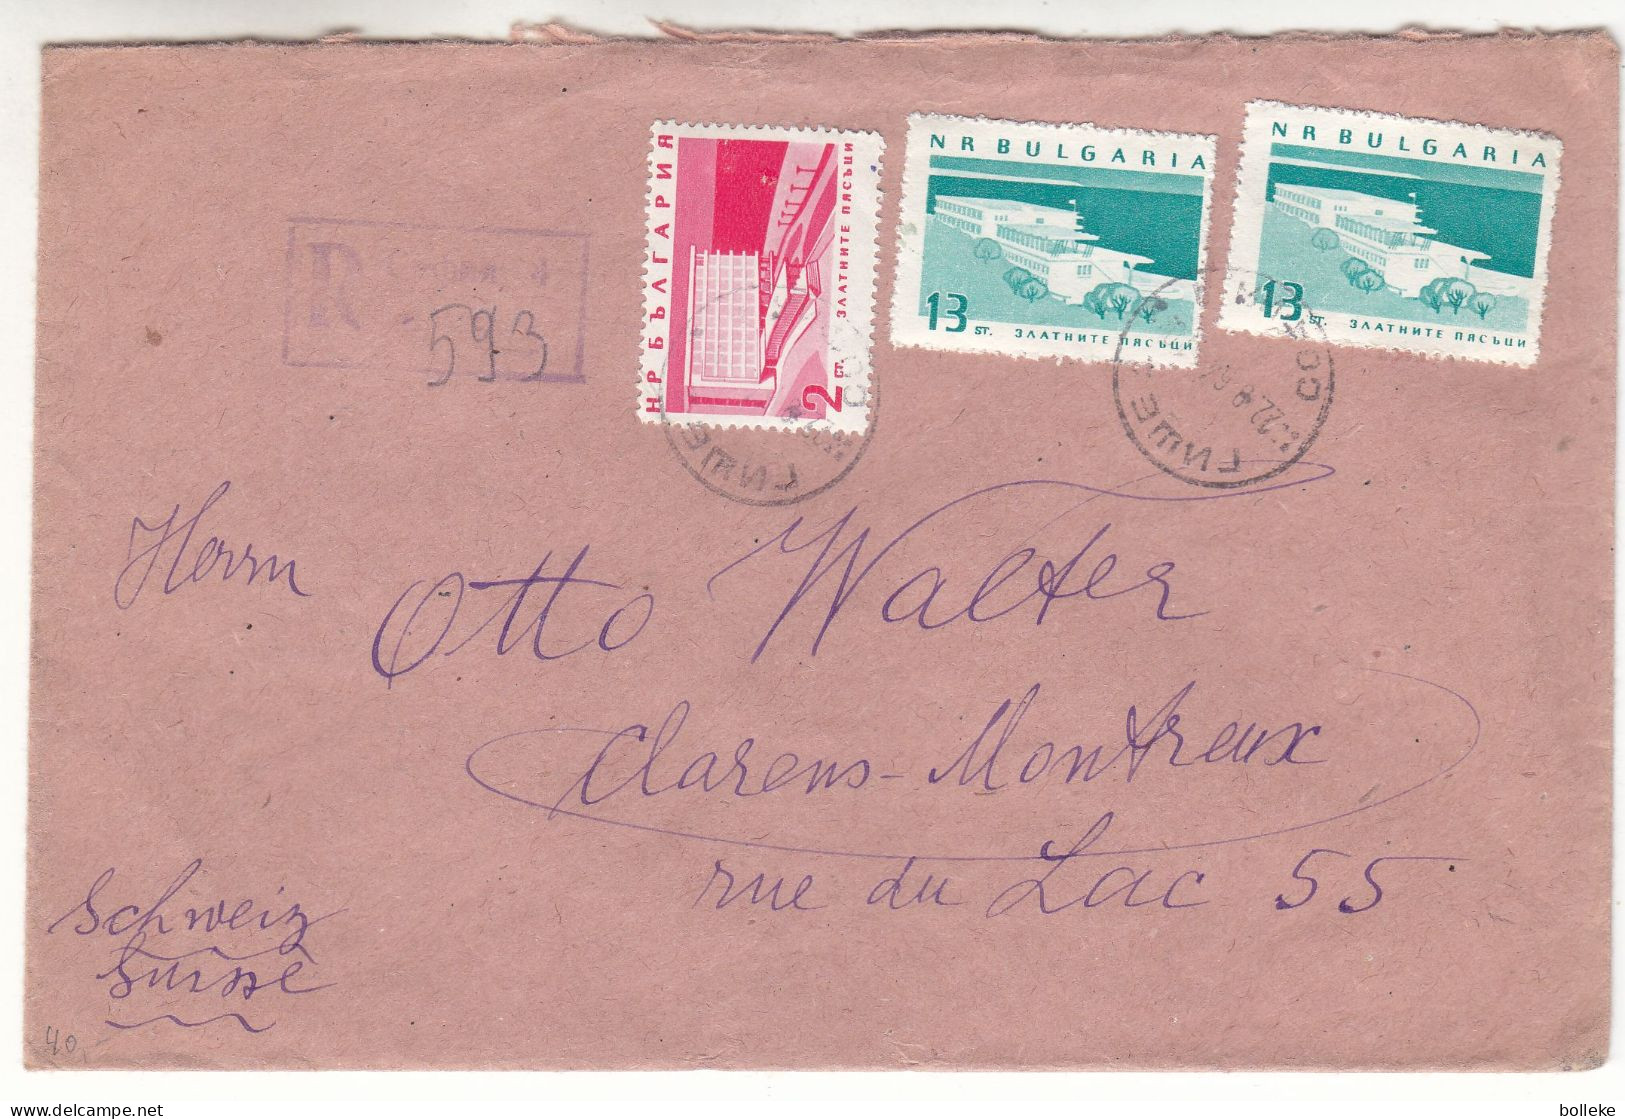 Bulgarie - Lettre Recom De 1964 - Oblit Sofia - Exp Vers Clarens Montreux - - Cartas & Documentos